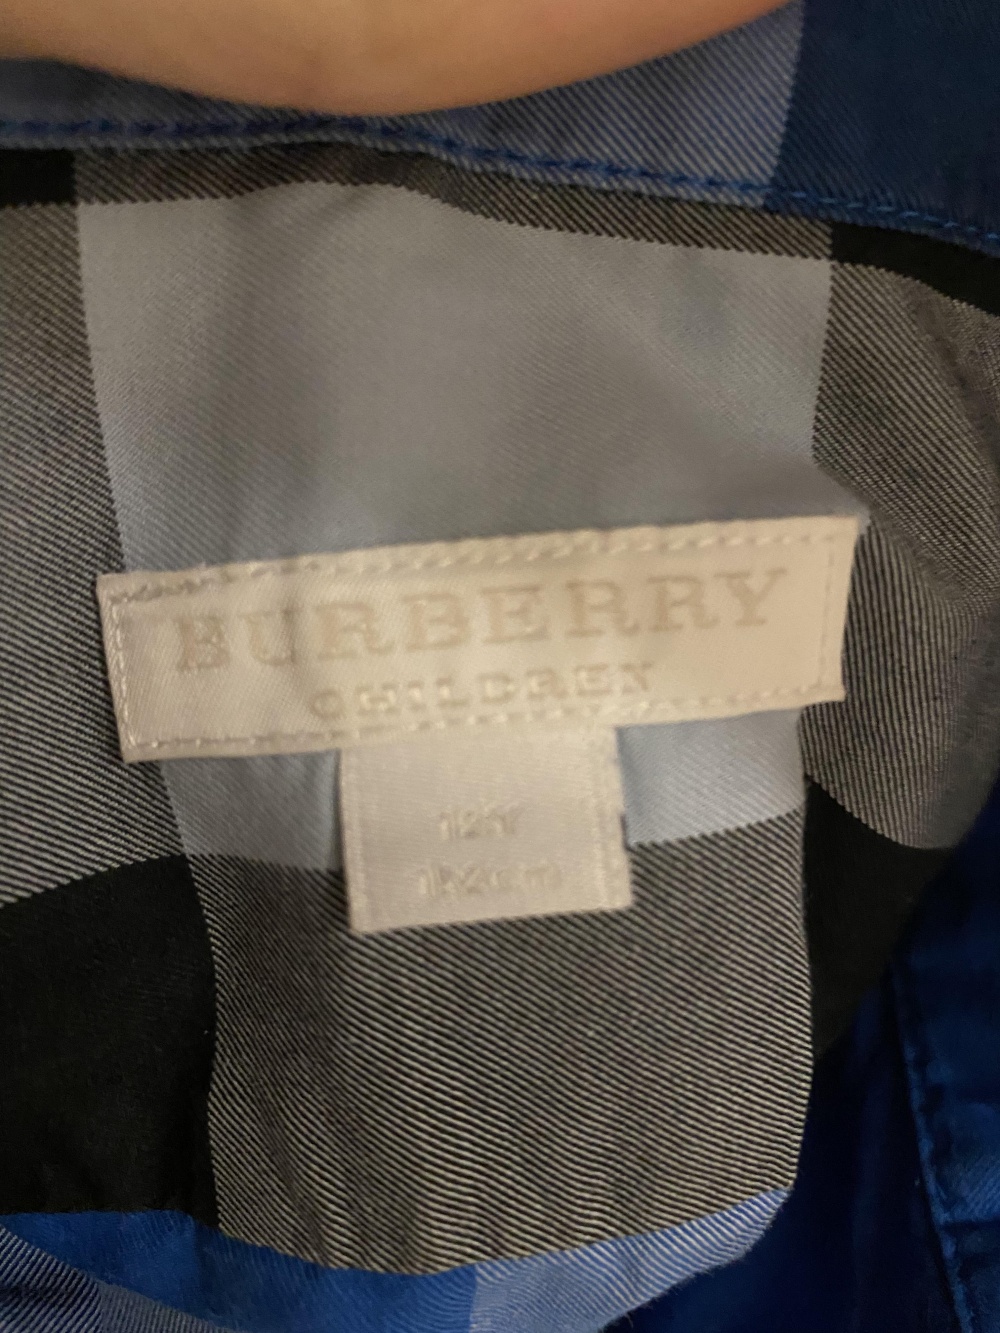 Комплект рубашек Burberry, 12 Y,152 см